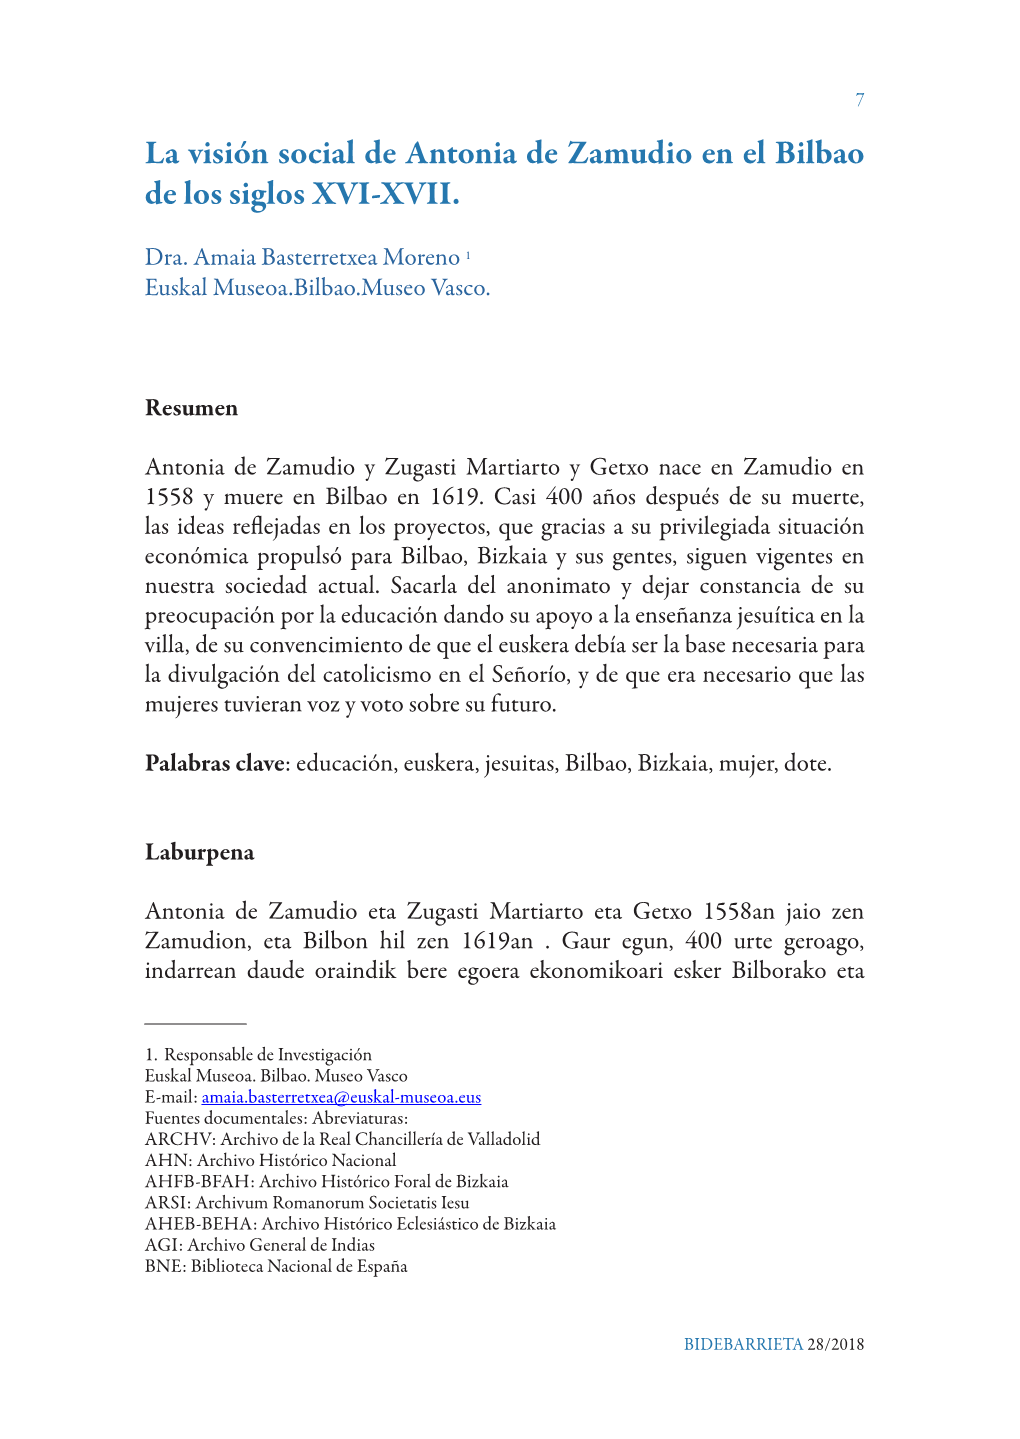 La Visión Social De Antonia De Zamudio En El Bilbao De Los Siglos XVI-XVII